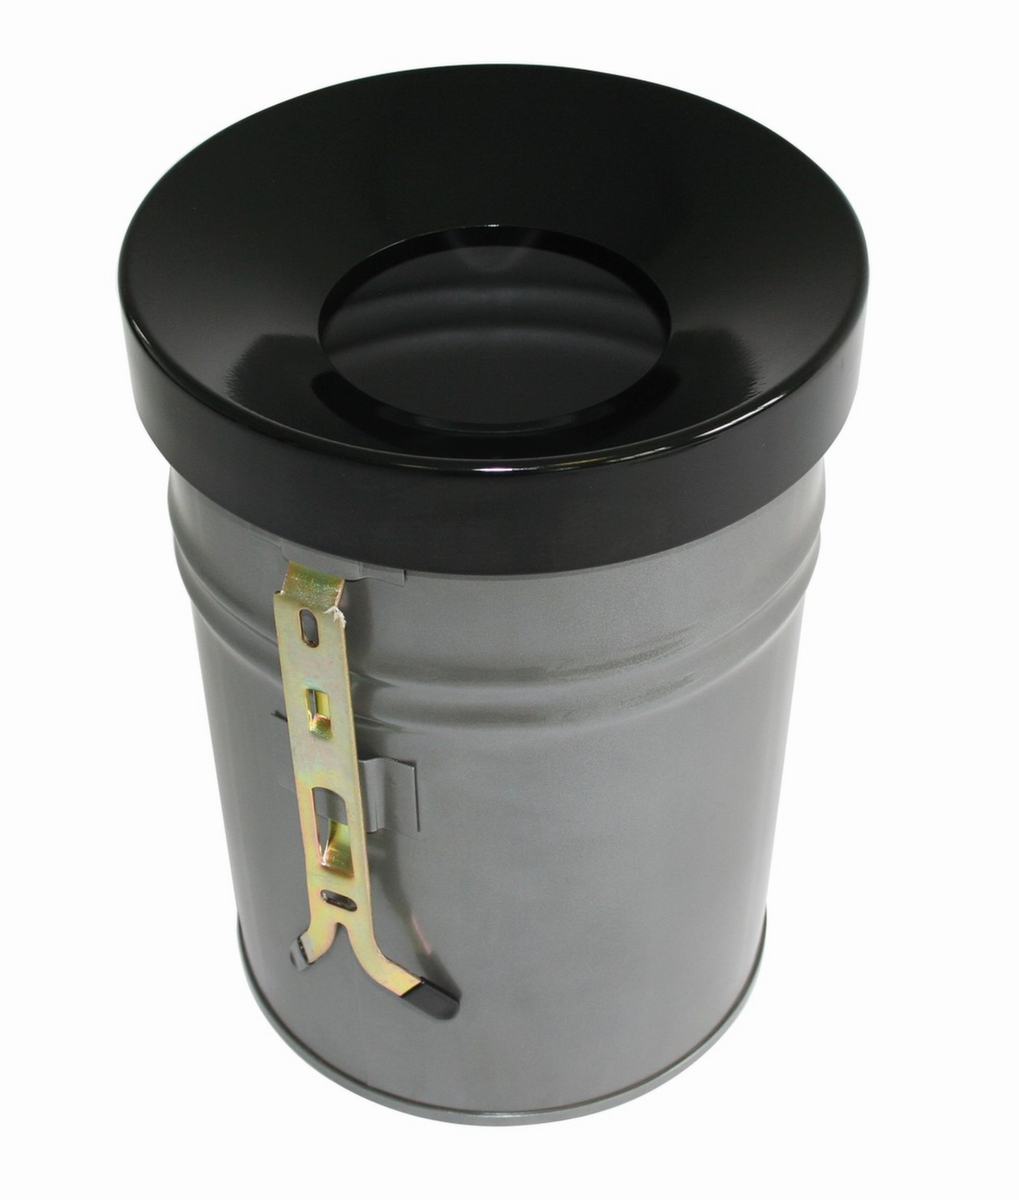 Zelfblussende afvalbak FIRE EX voor wandbevestiging, 24 l, lichtgrijs, bovendeel zwart  ZOOM